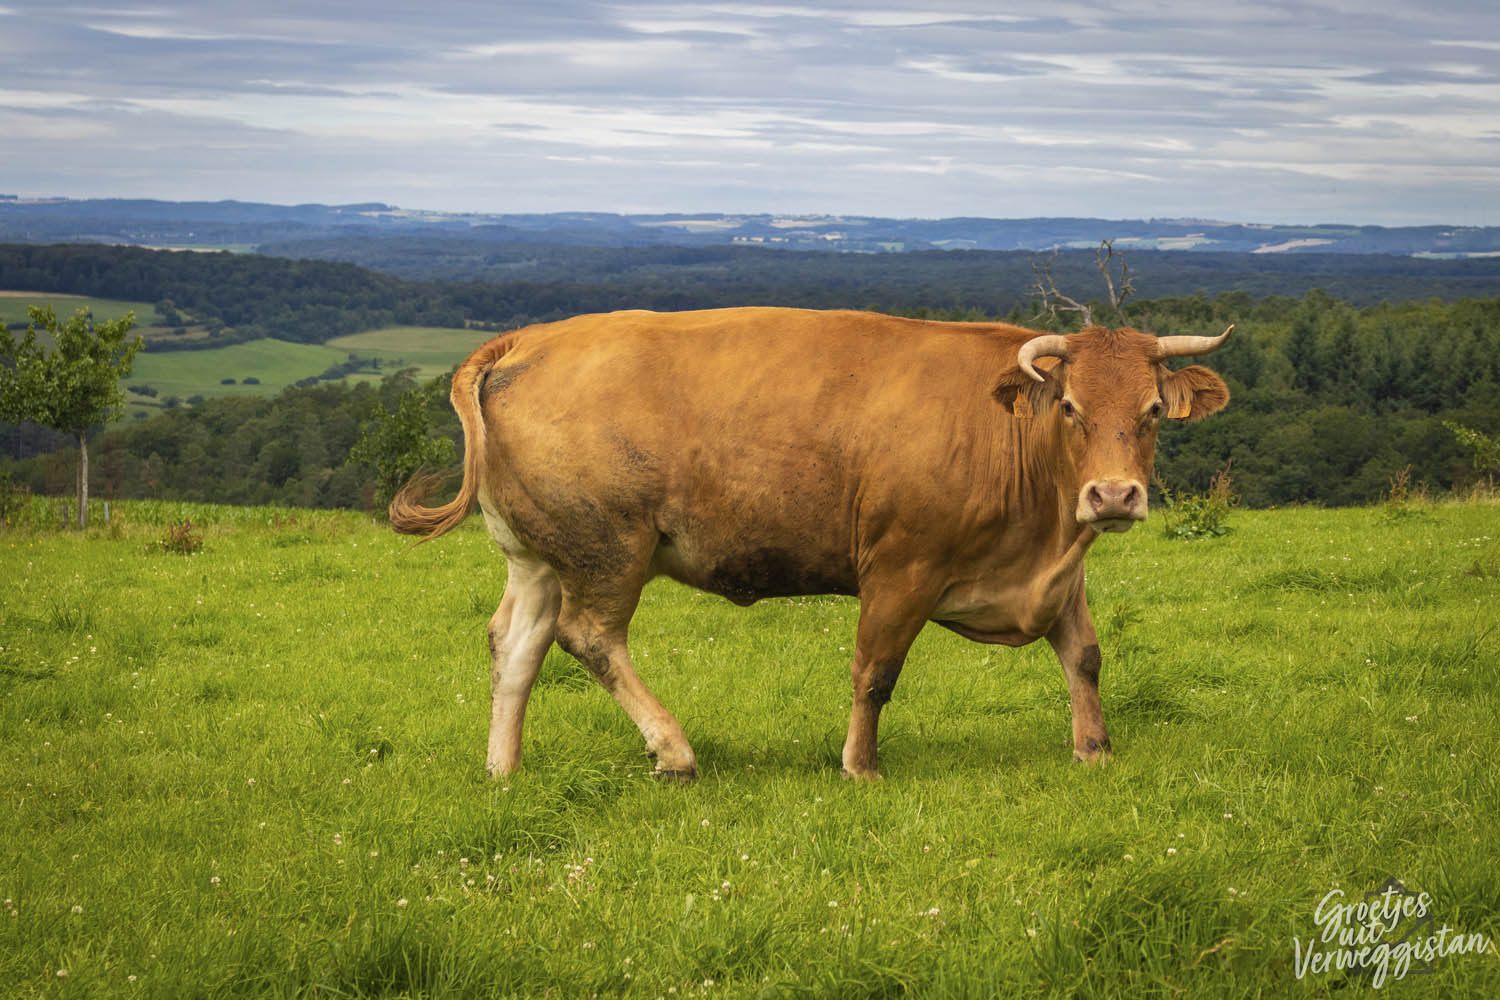 Bruine koe in de weide in Luxemburg met bos en dorpjes op de achtergrond.